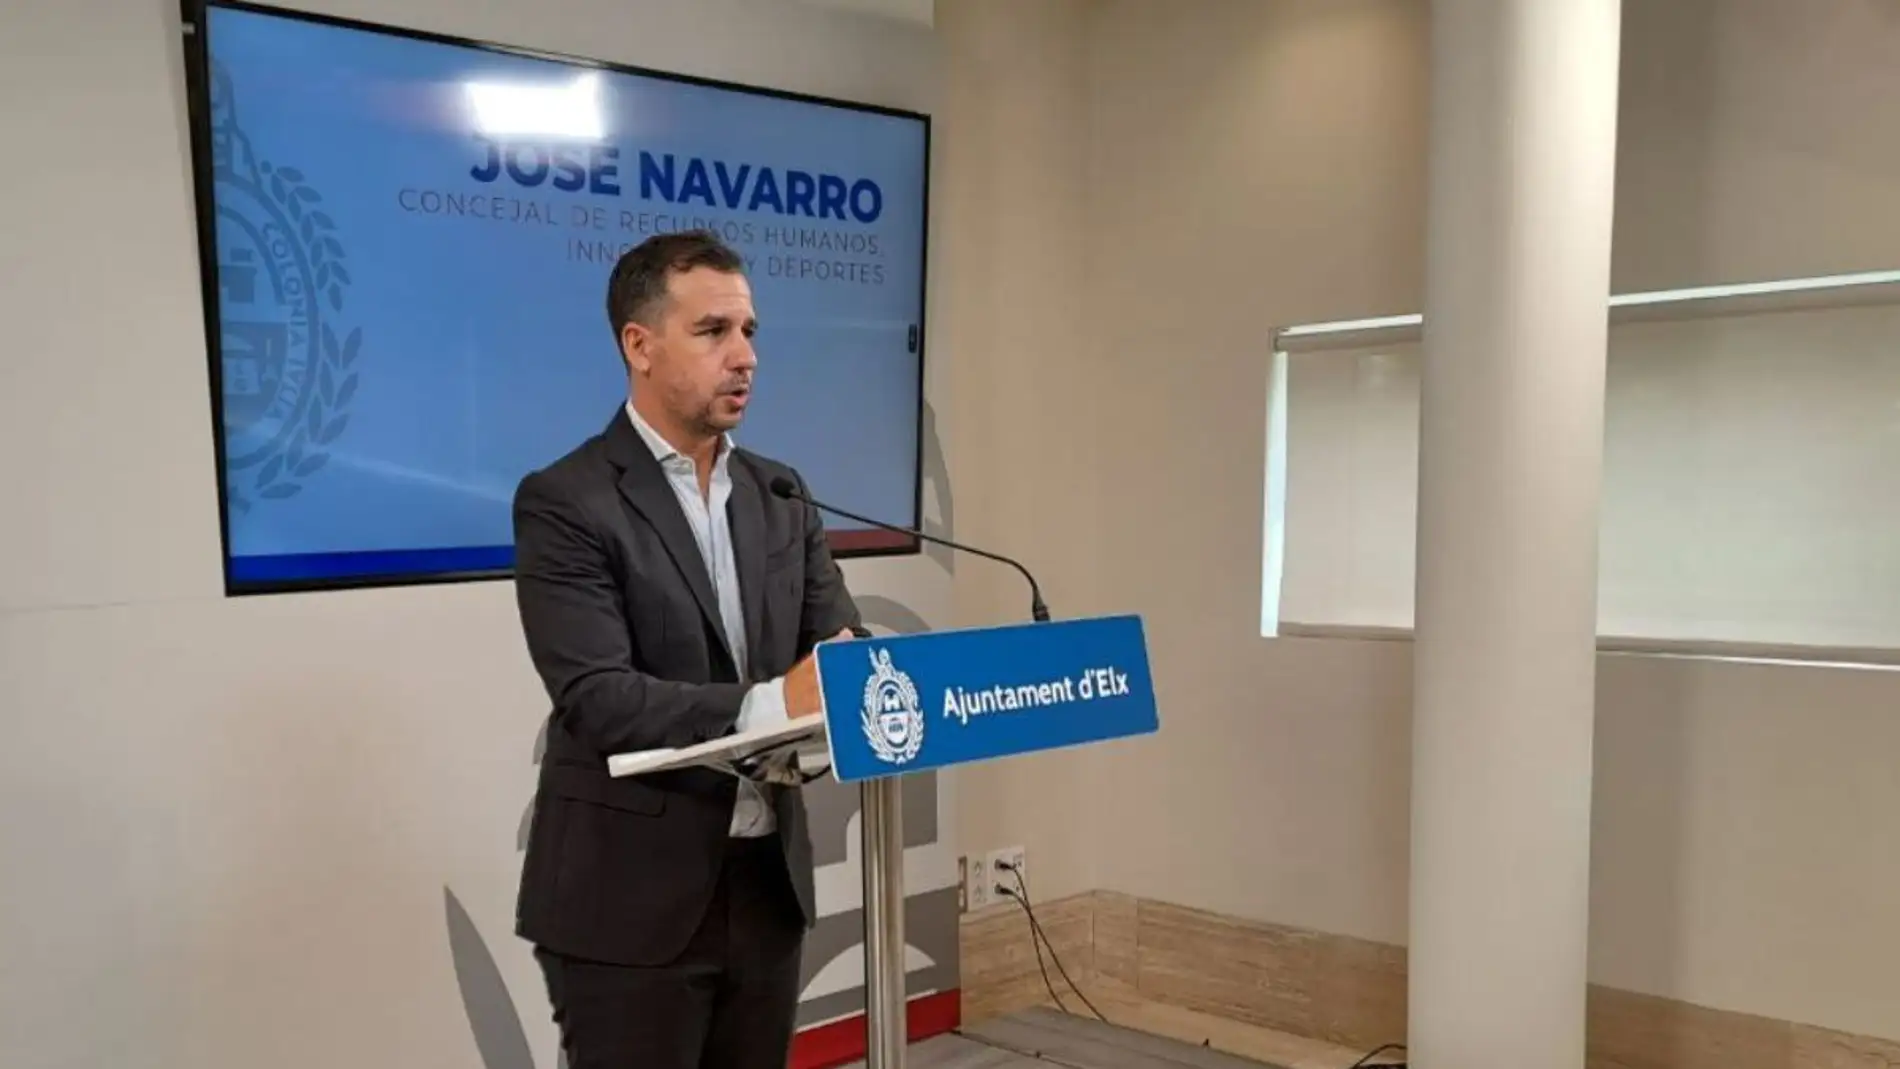 José Navarro, concejal del PP en el Ayuntamiento de Elche.